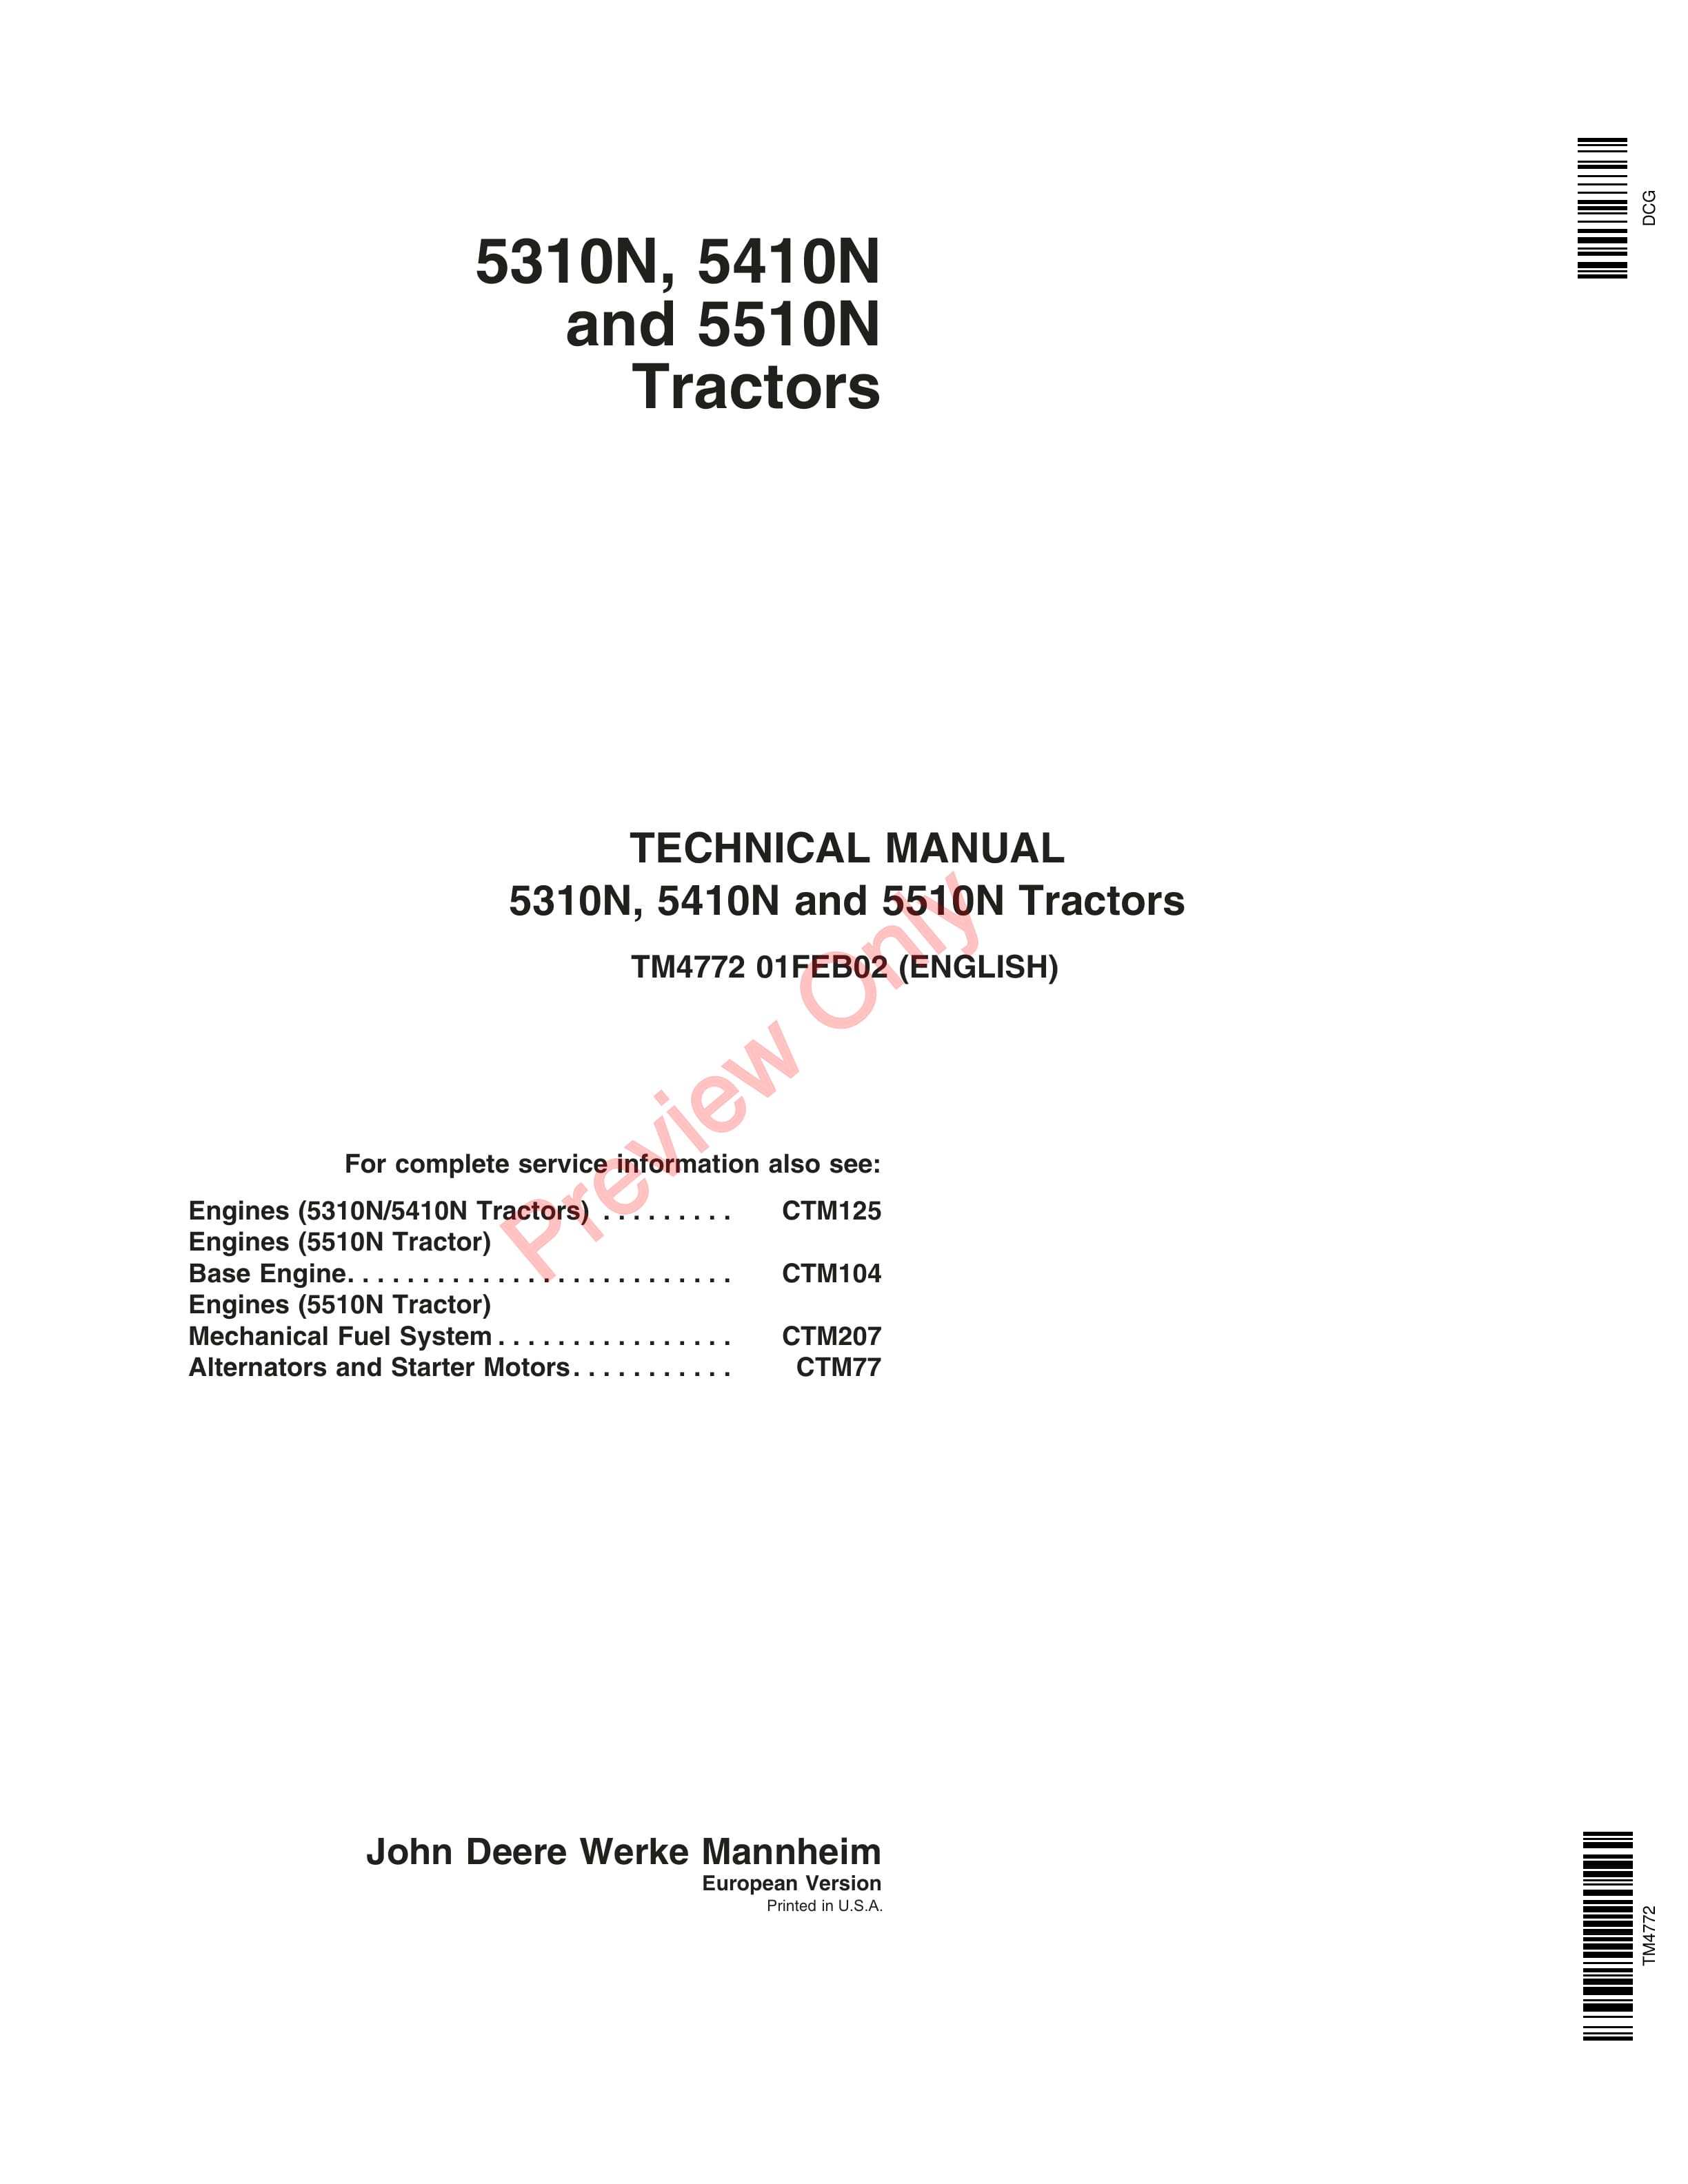 John Deere 5310N 5410N and 5510N Tractors Technical Manual TM4772 01FEB02 1